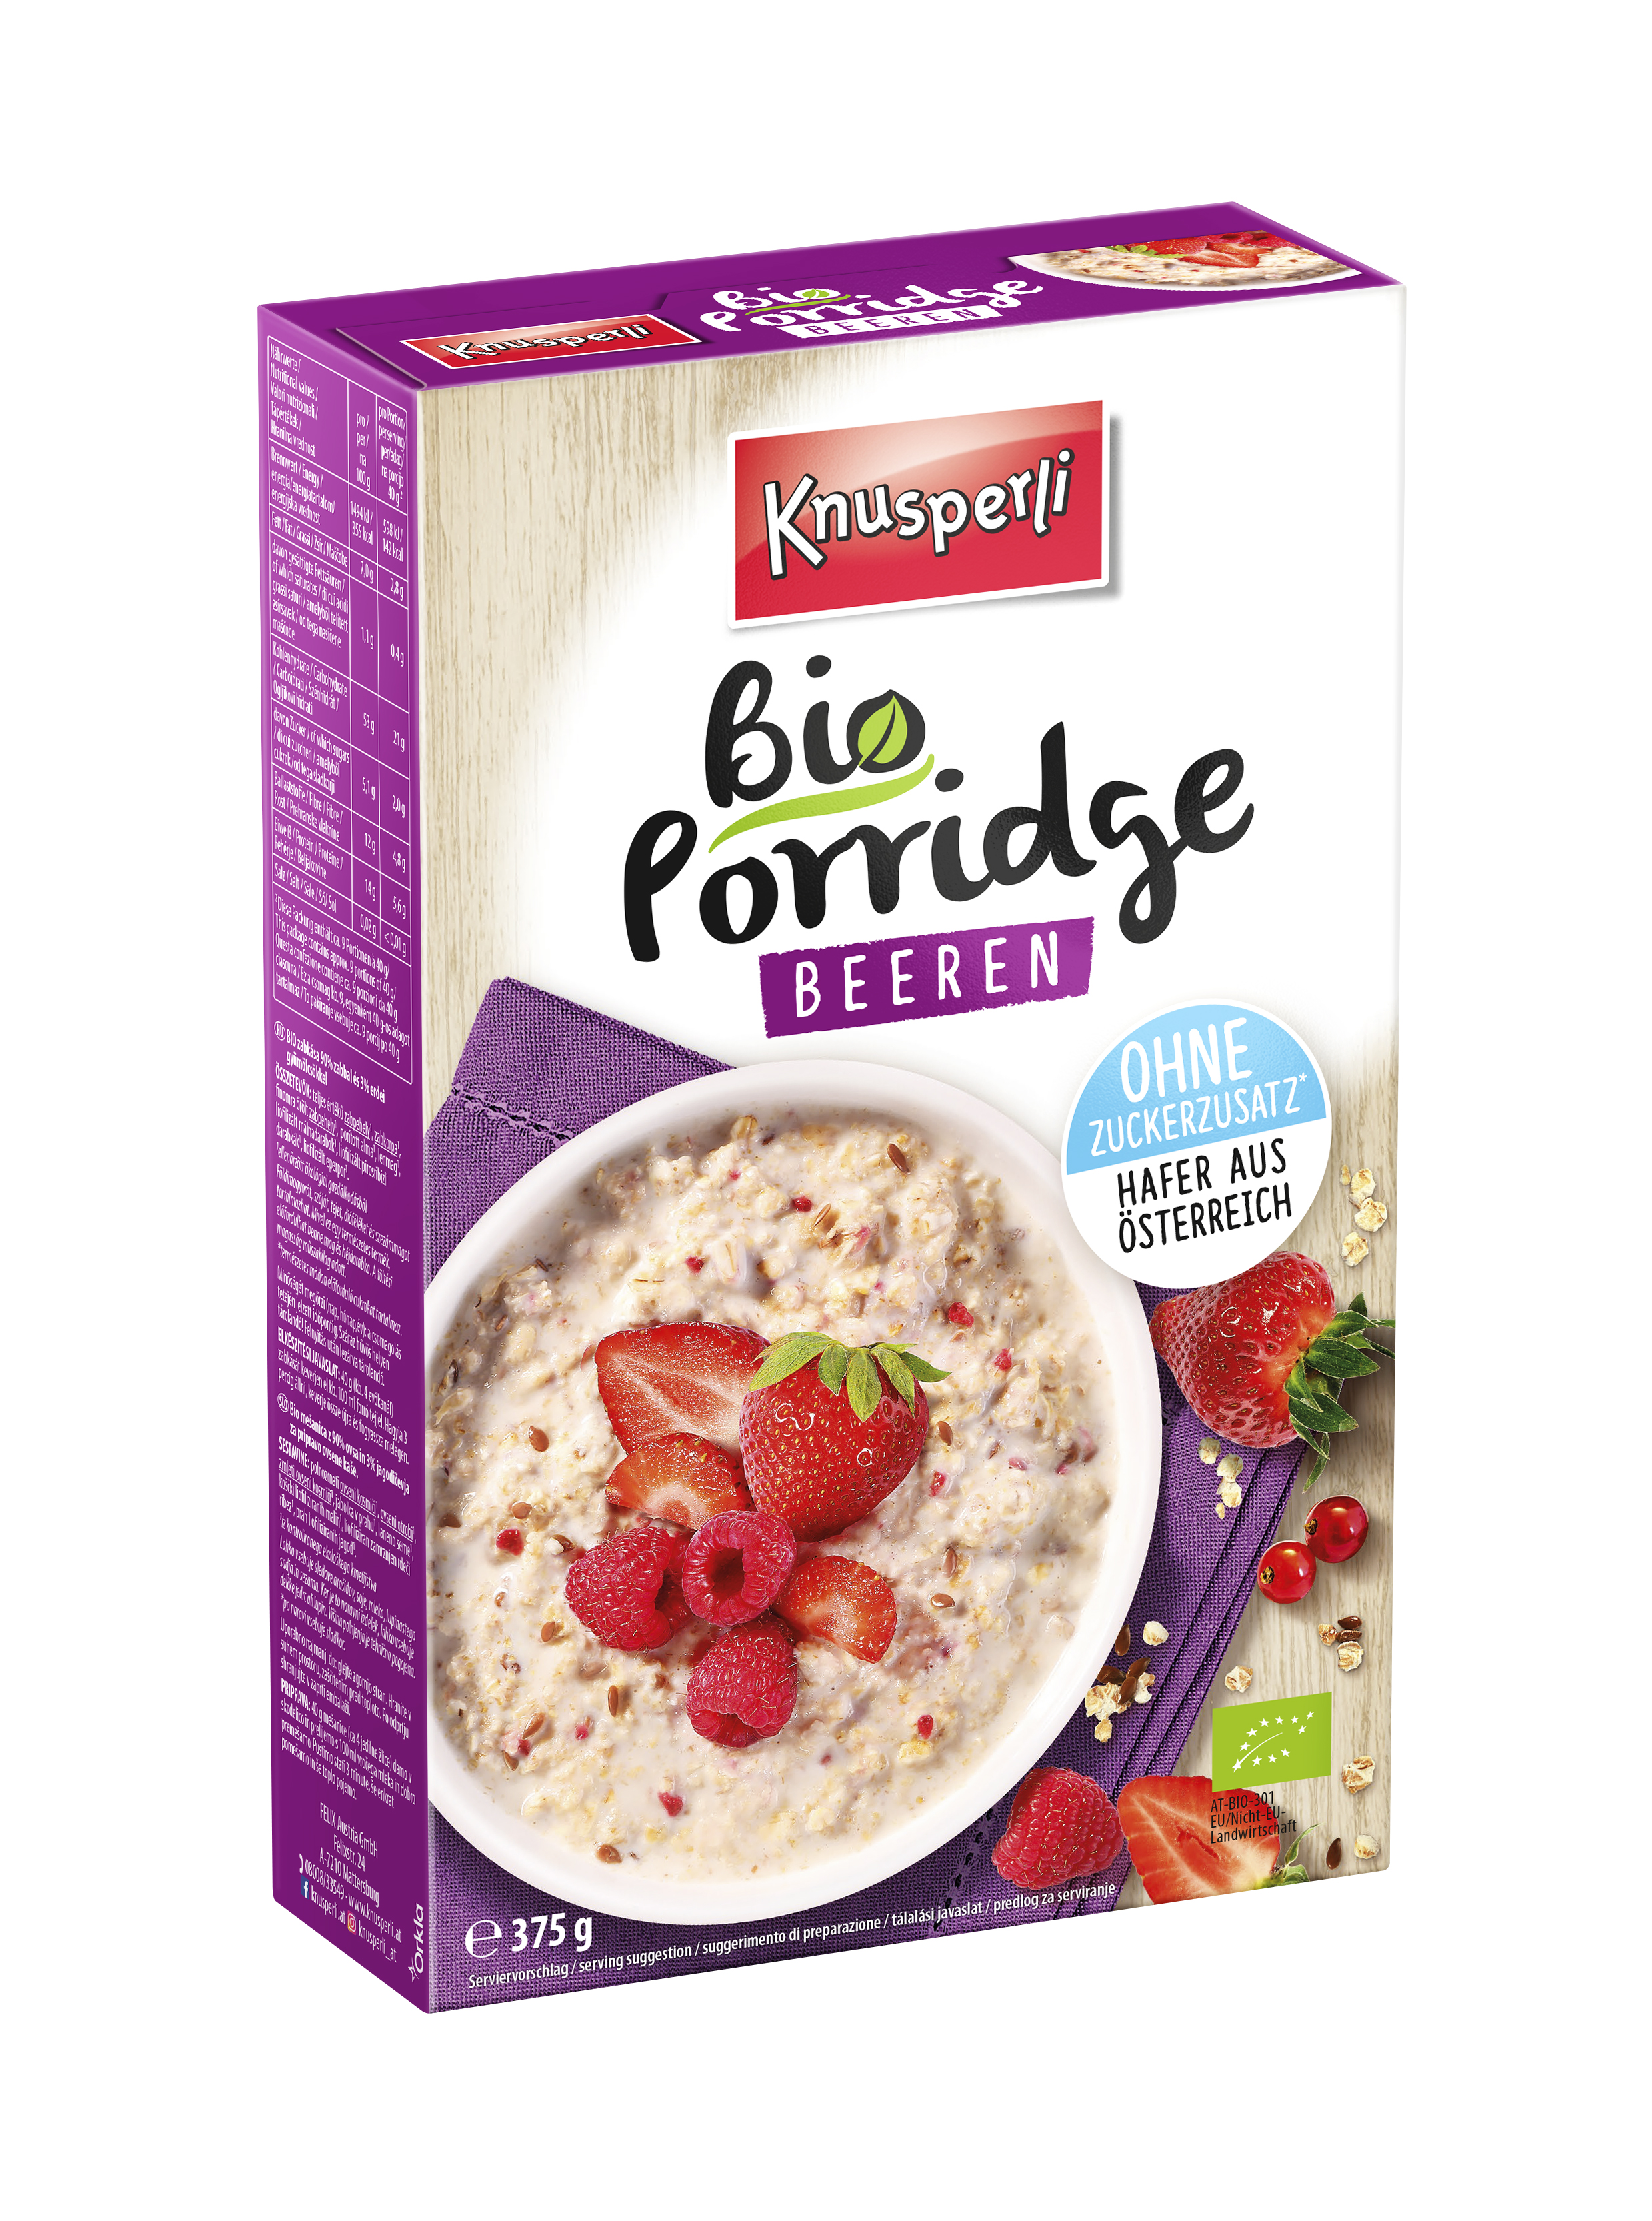 Knusperli Bio Porridge Beeren